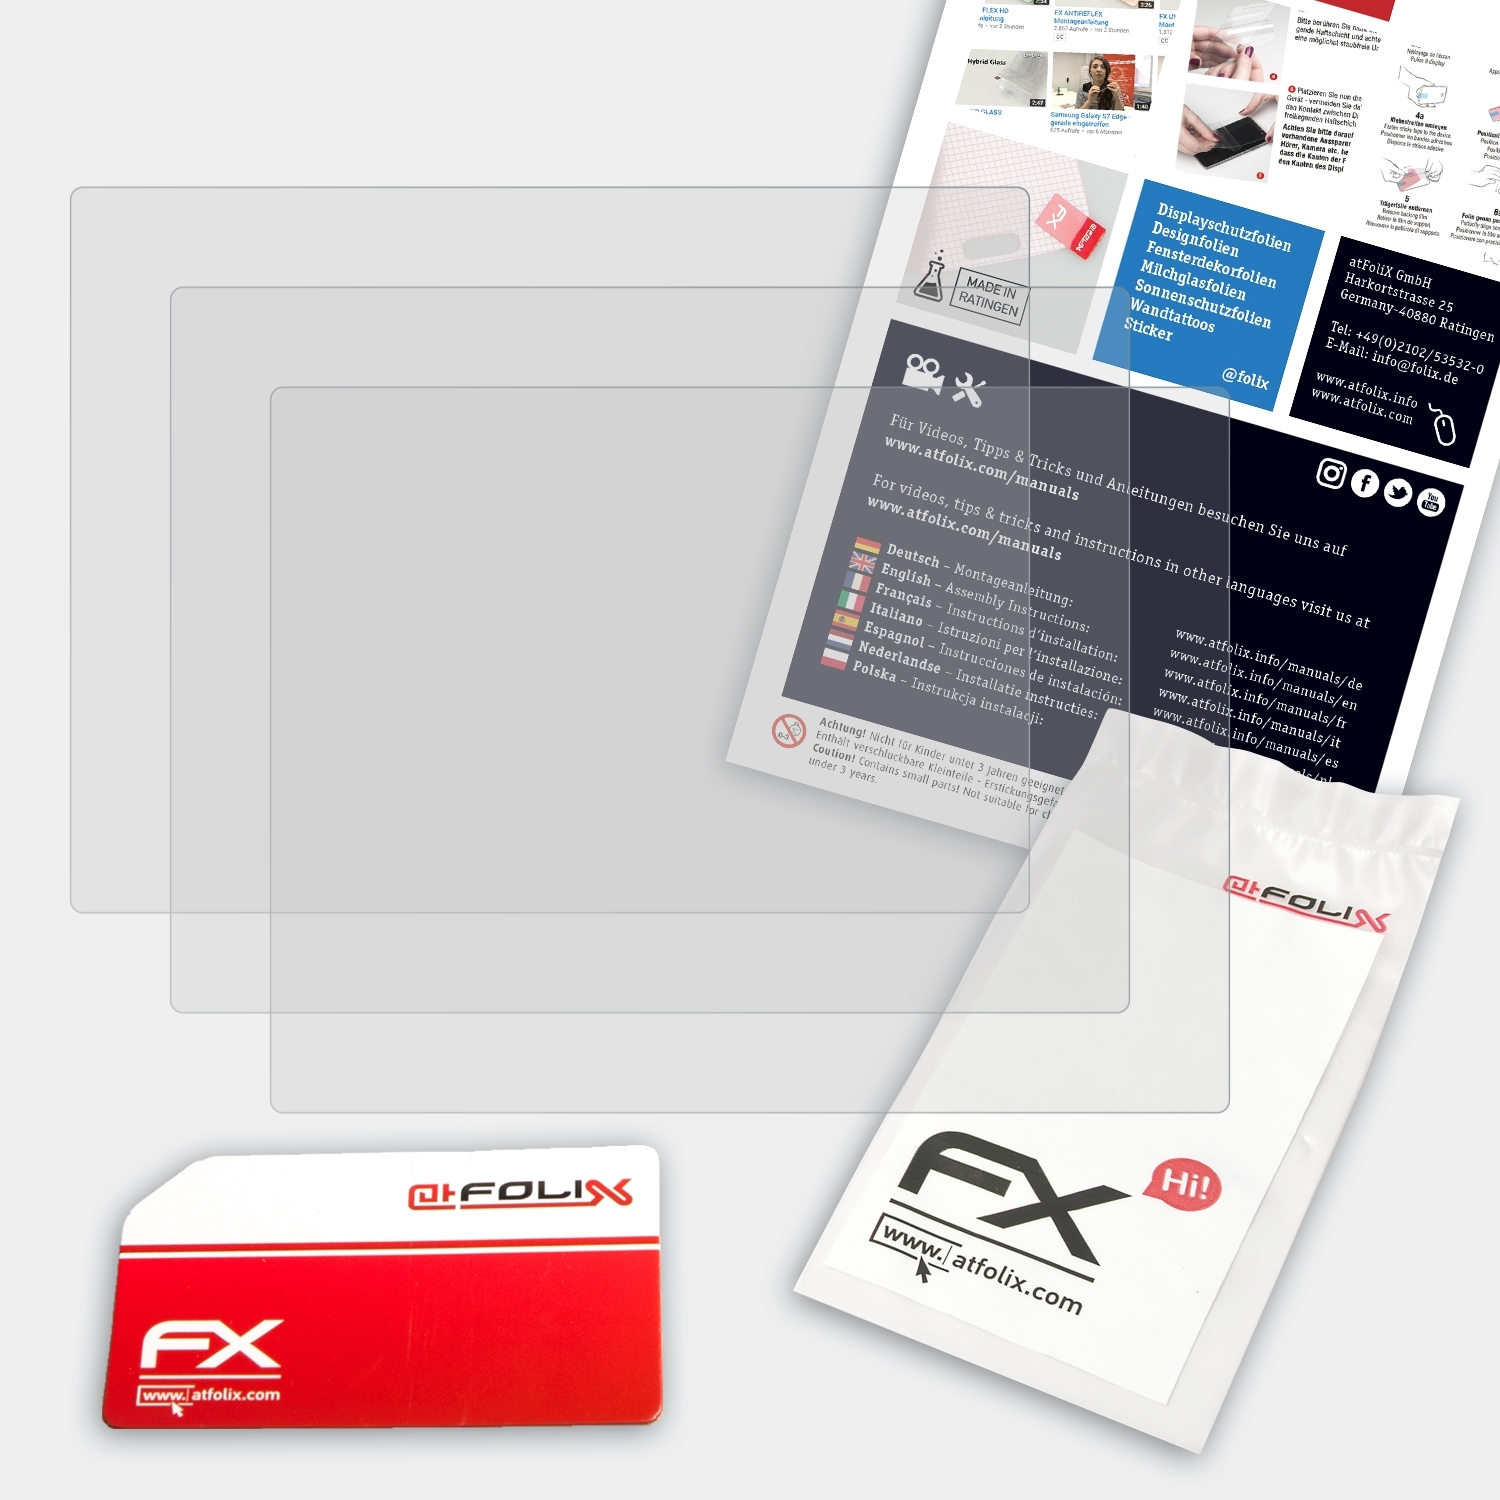 Displayschutz(für 3x ATFOLIX X10) FX-Antireflex Fujifilm